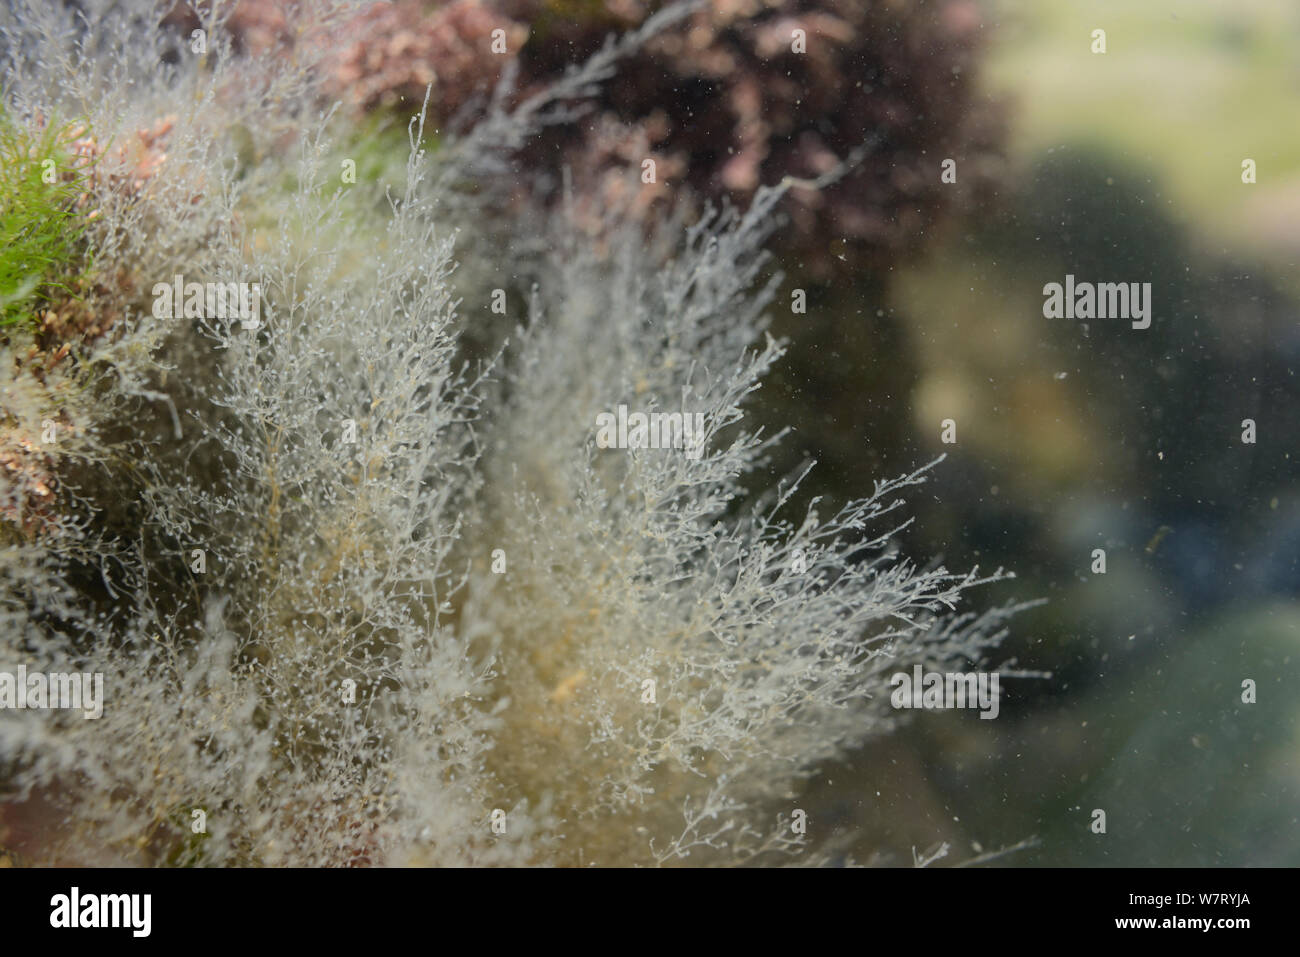 Hidroide colonias (Obelia dichotoma) conectados a las piedras en un rockpool, Rhossili, la península de Gower, Wales, REINO UNIDO, Junio. Foto de stock